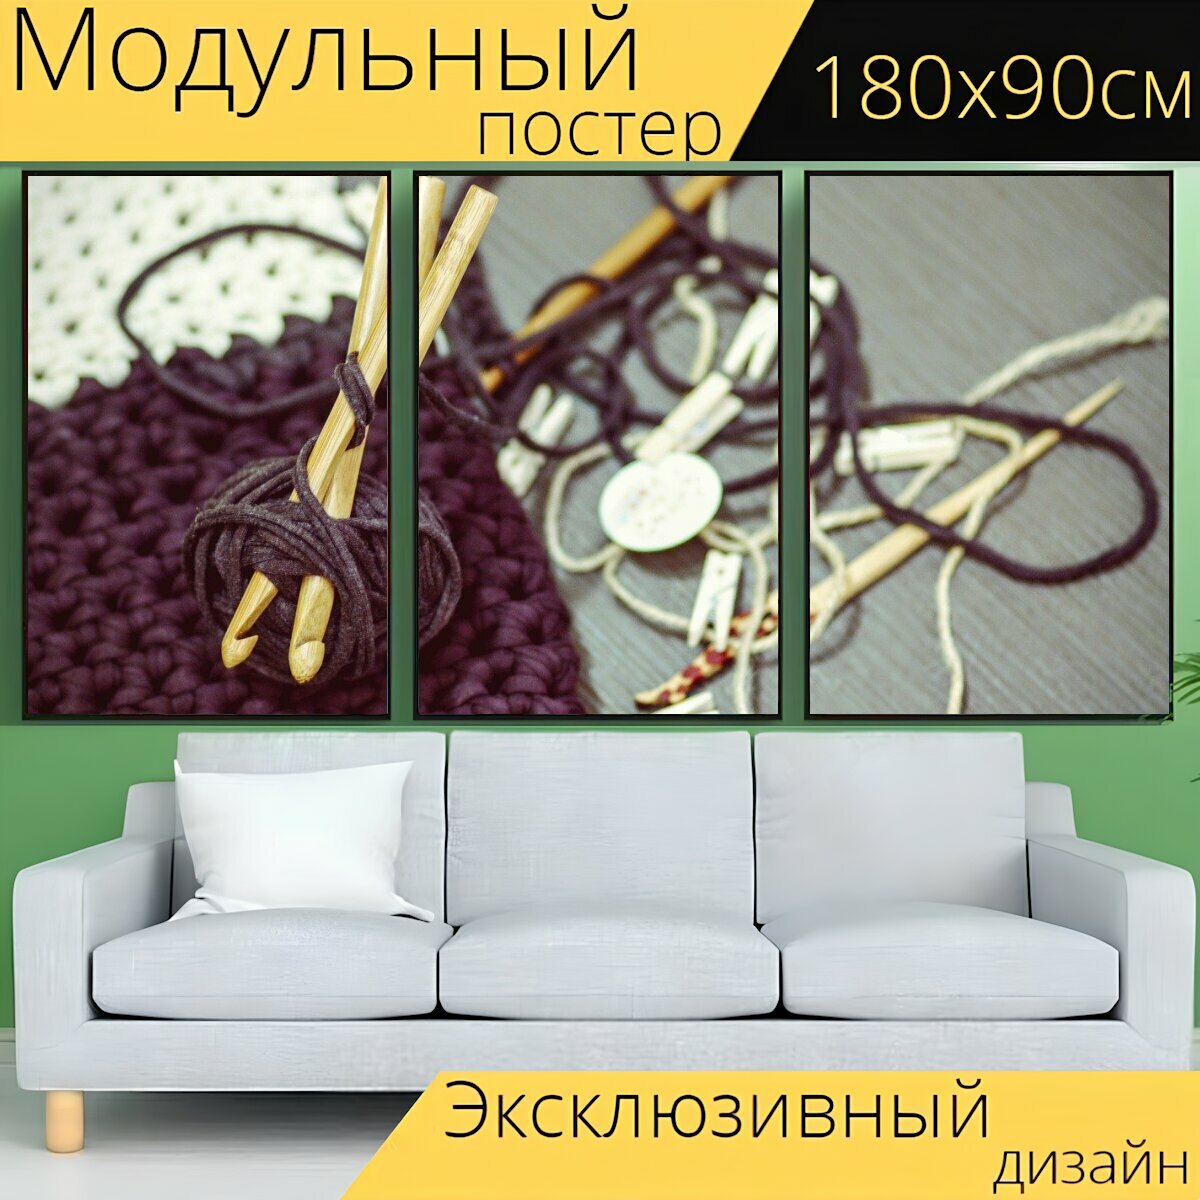 Модульный постер "Вязание крючком, пряжа, сделай сам" 180 x 90 см. для интерьера